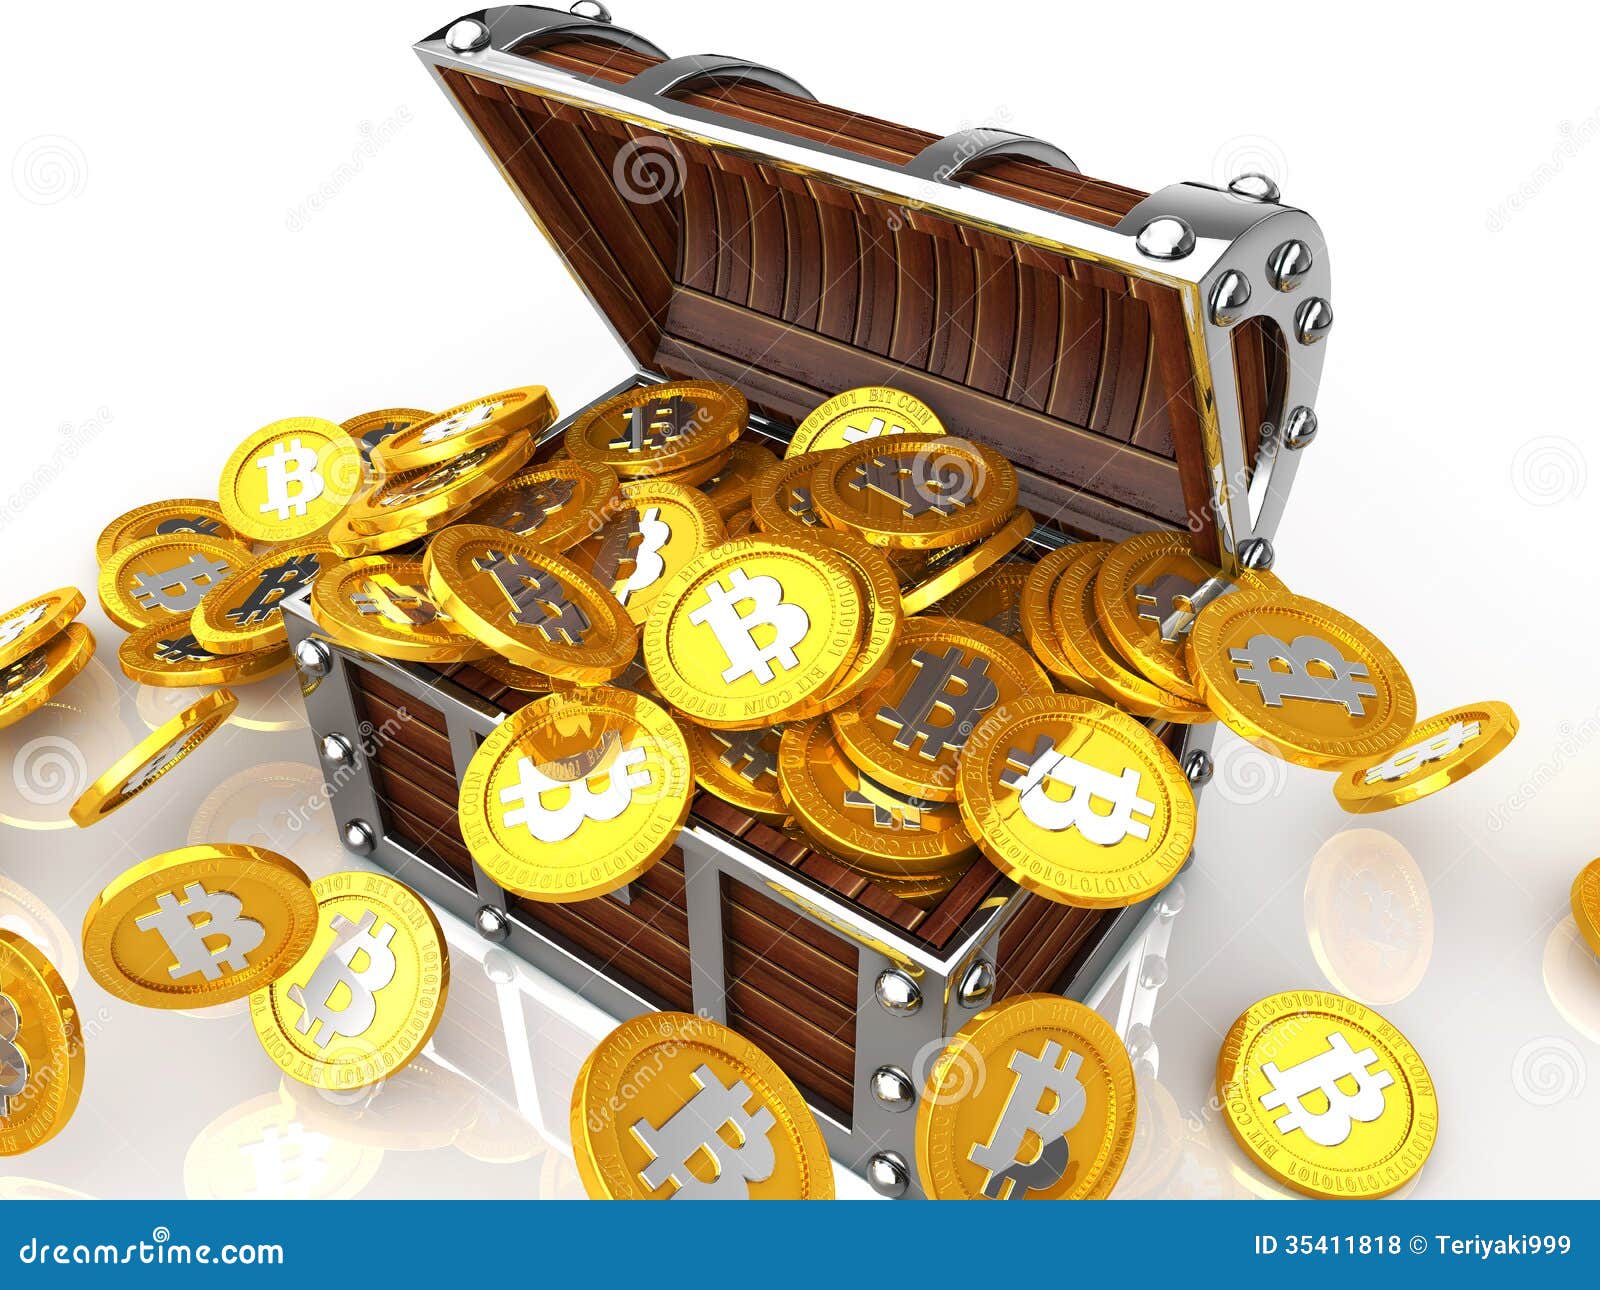 bitcoin treasure demo crypto trading app